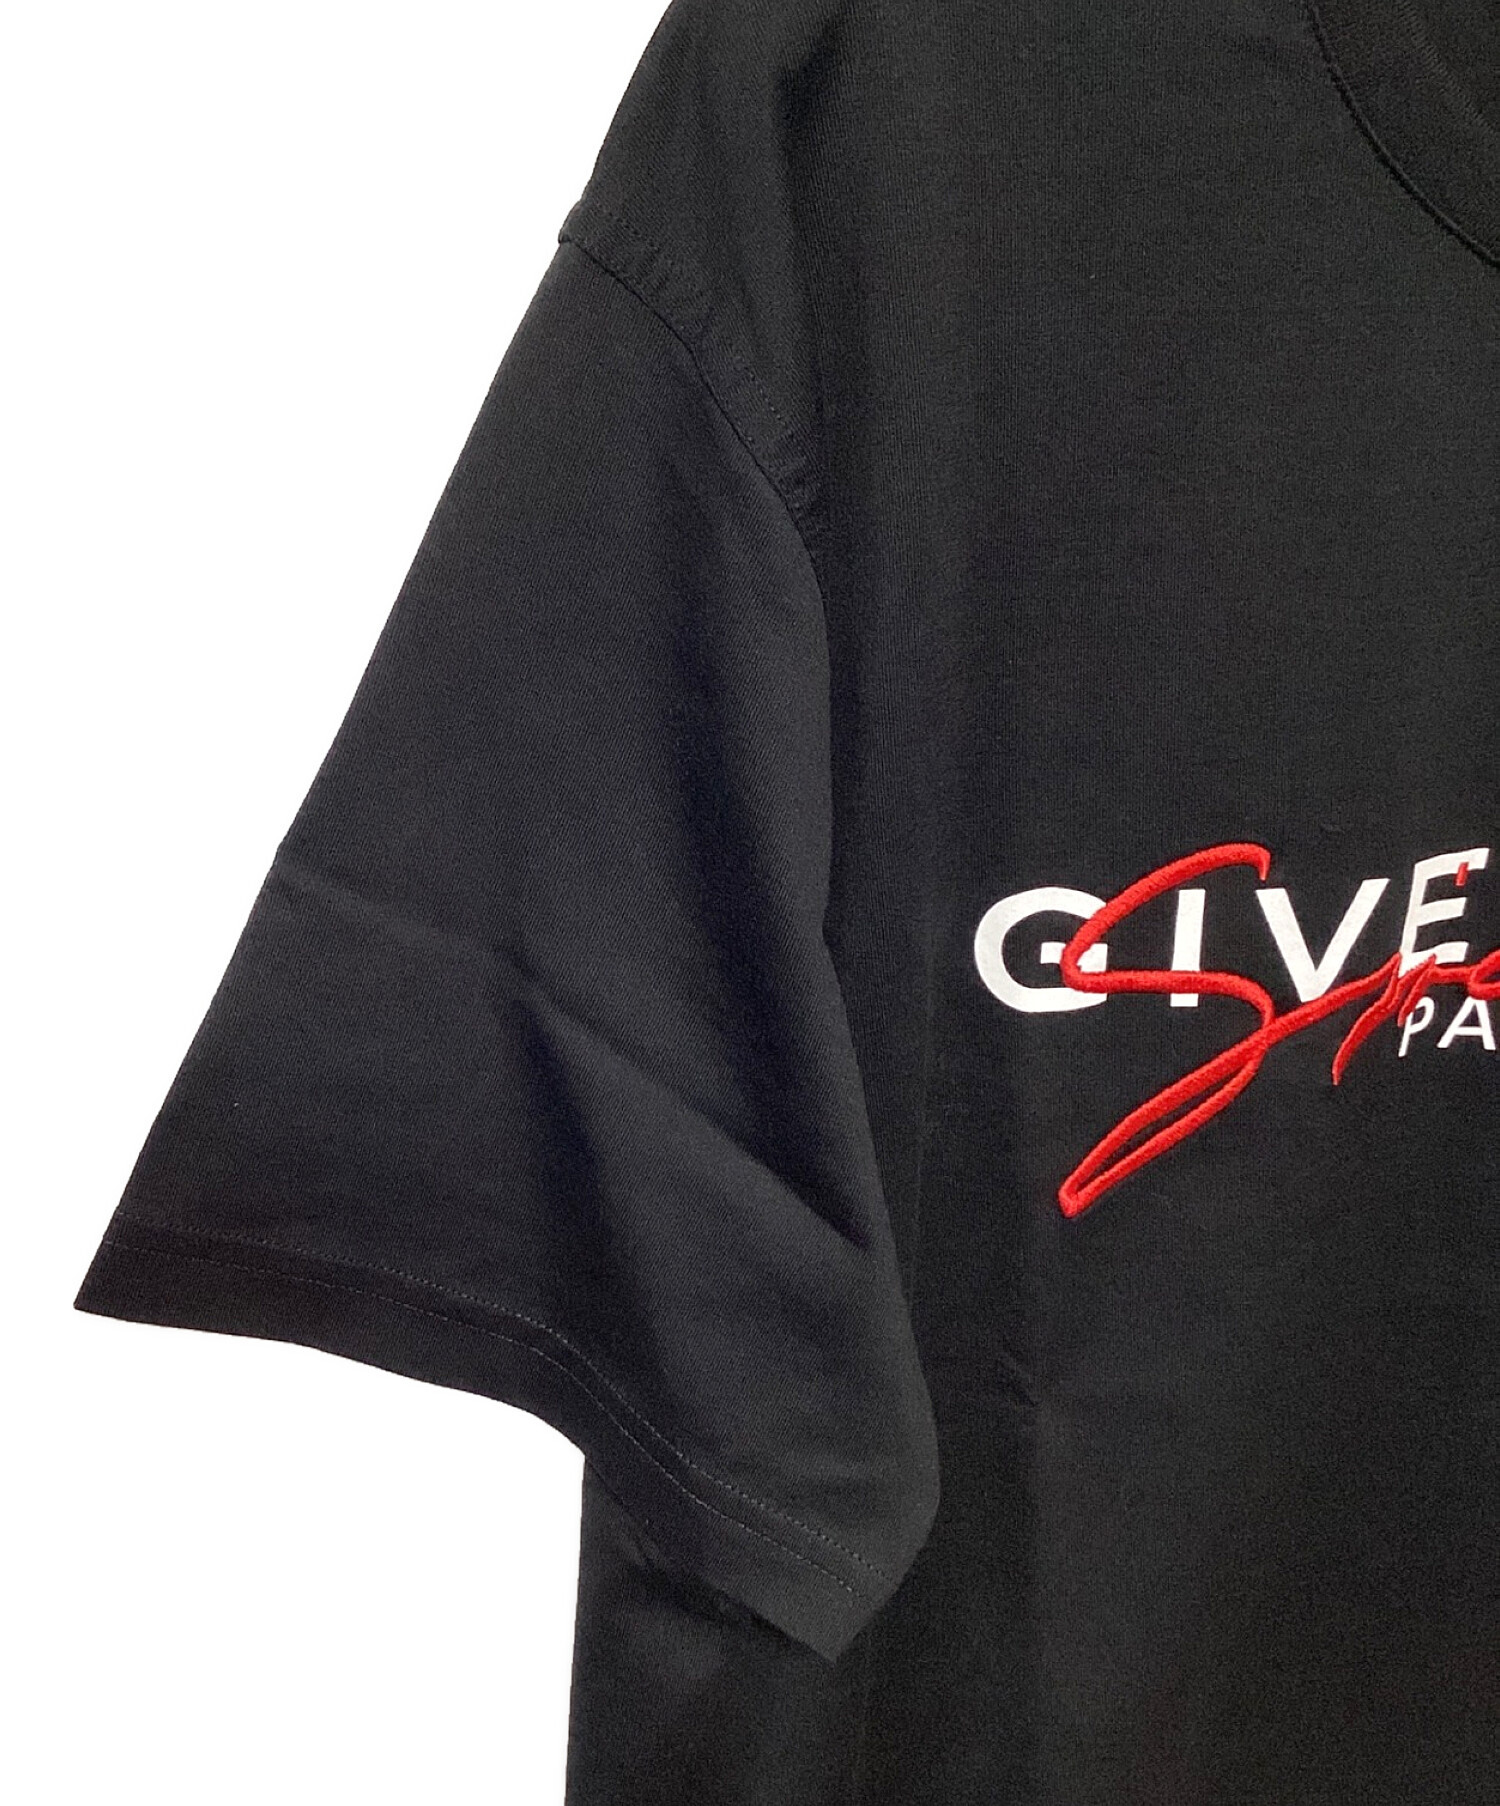 GIVENCHY (ジバンシィ) SIGNATURE PRINT ロゴプリントTシャツ ブラック サイズ:Ⅿ